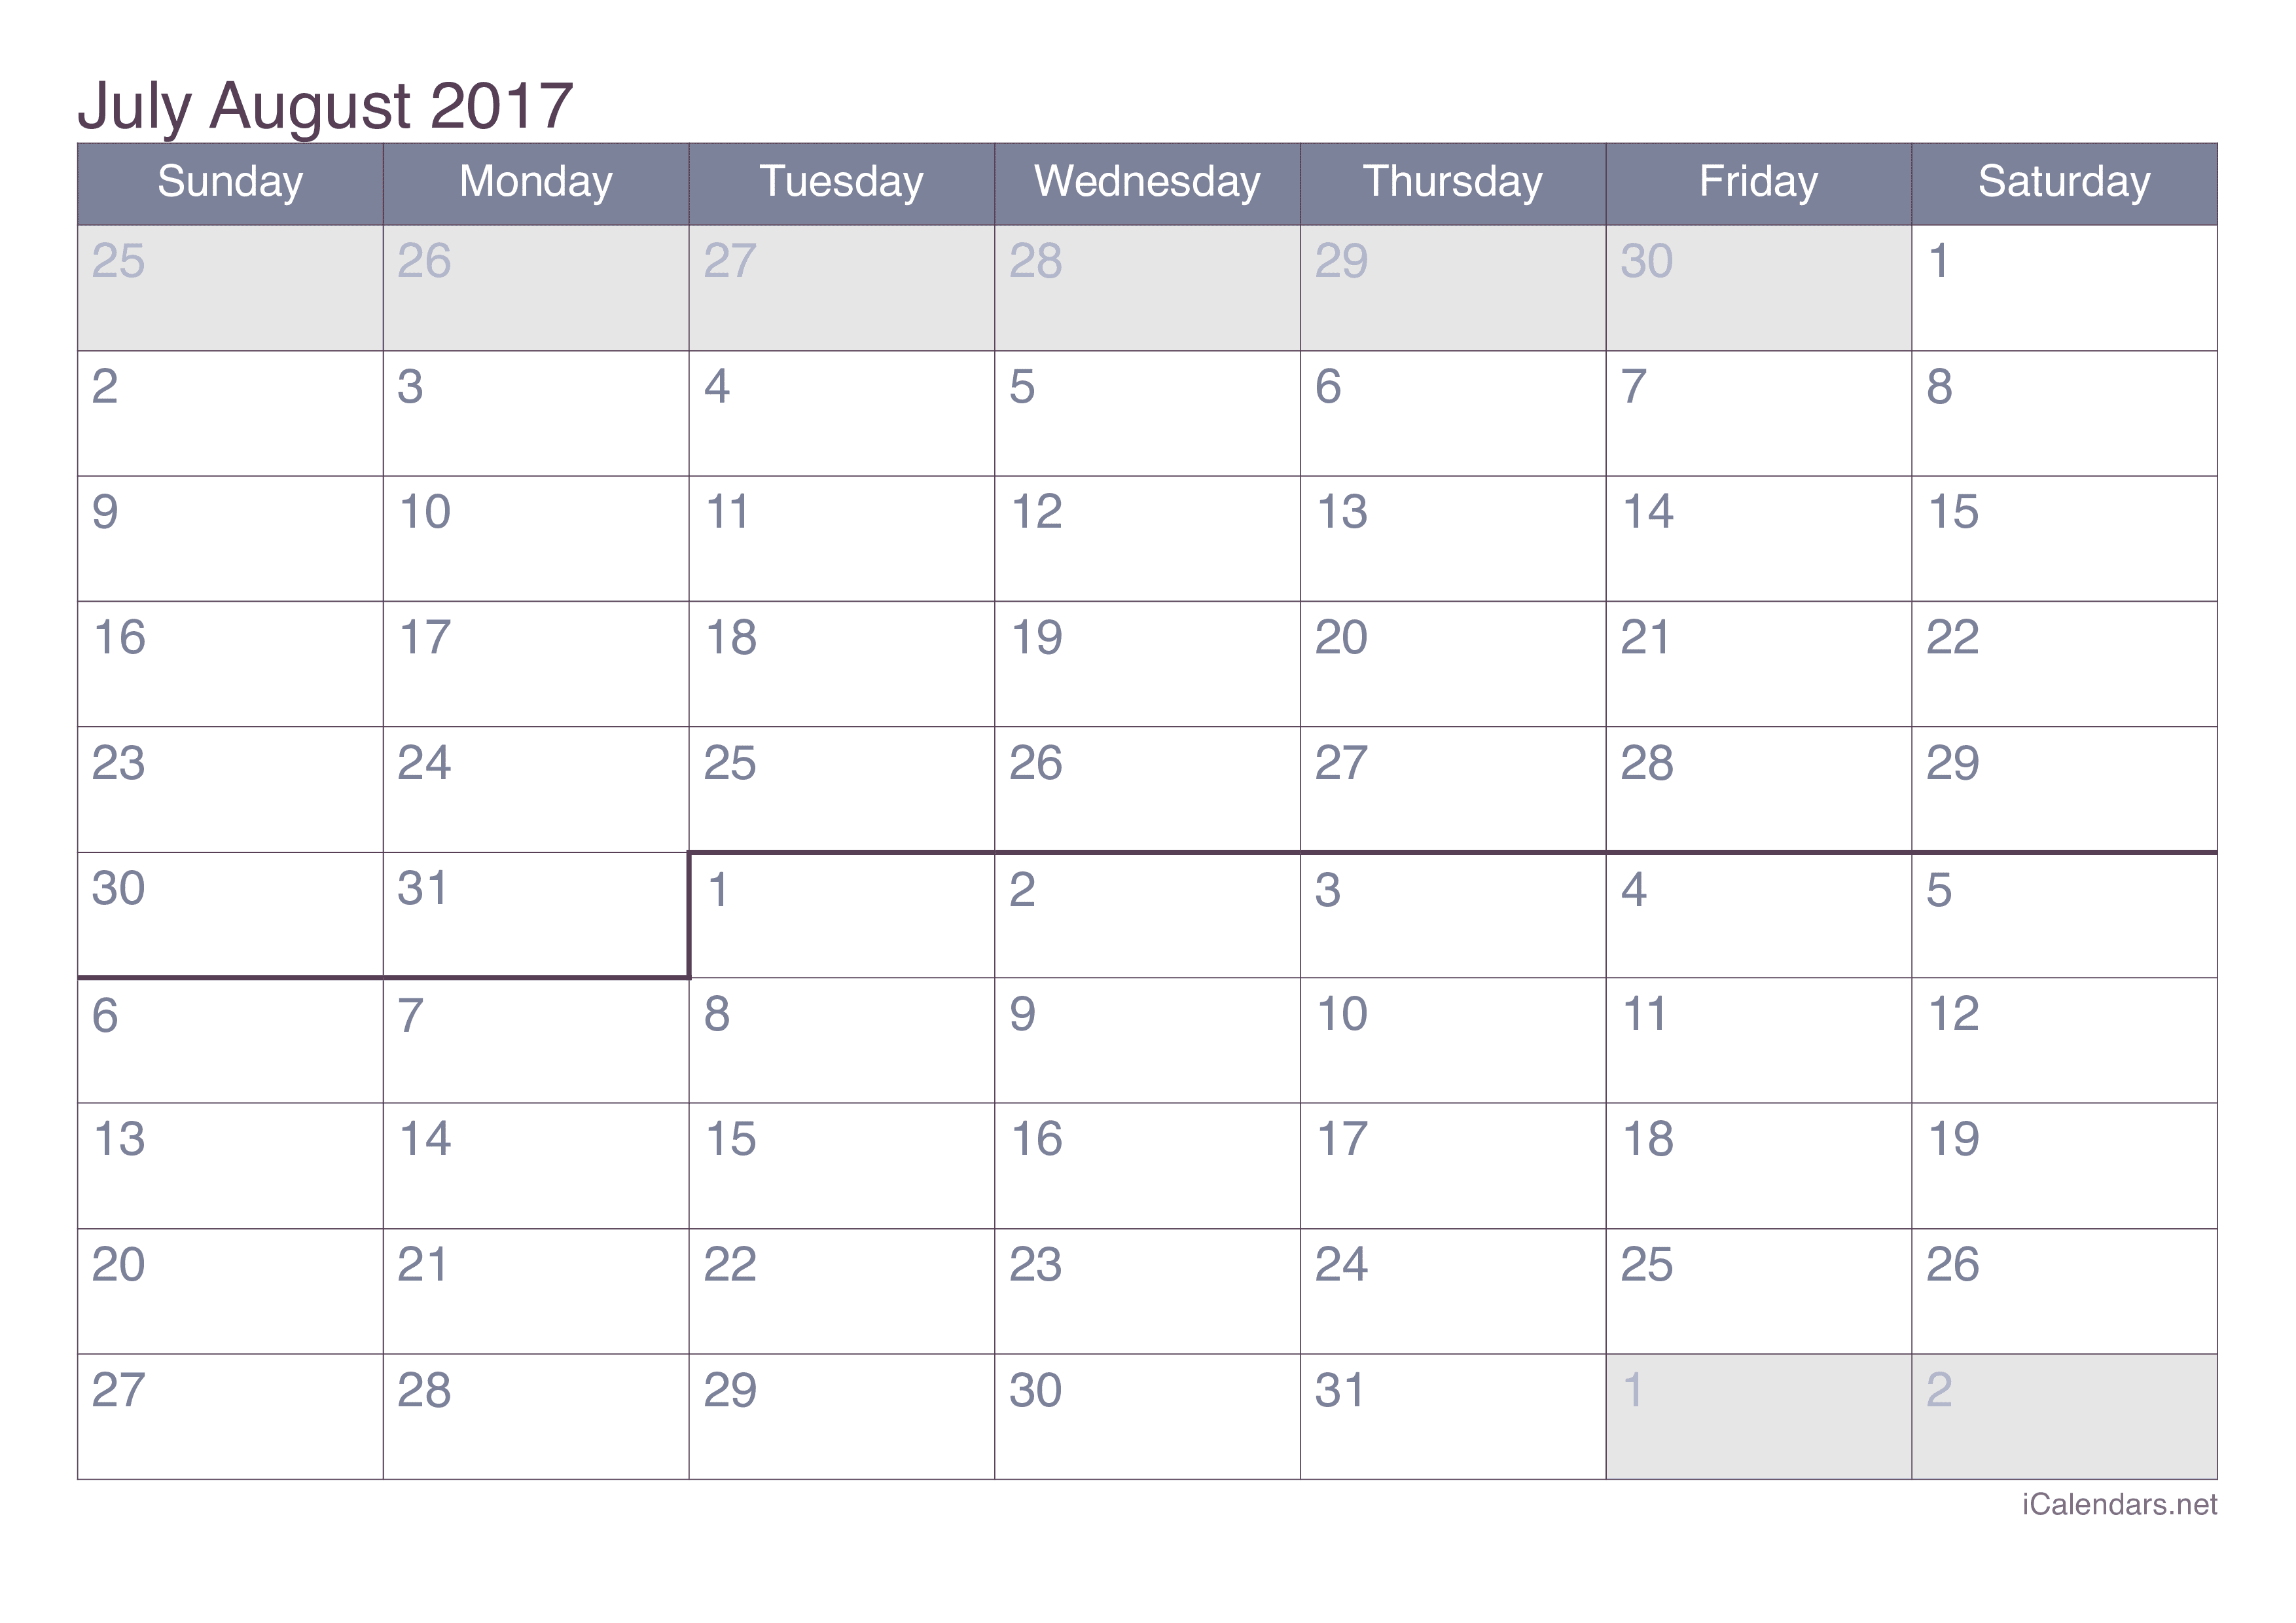 2017 July August Calendar - Office